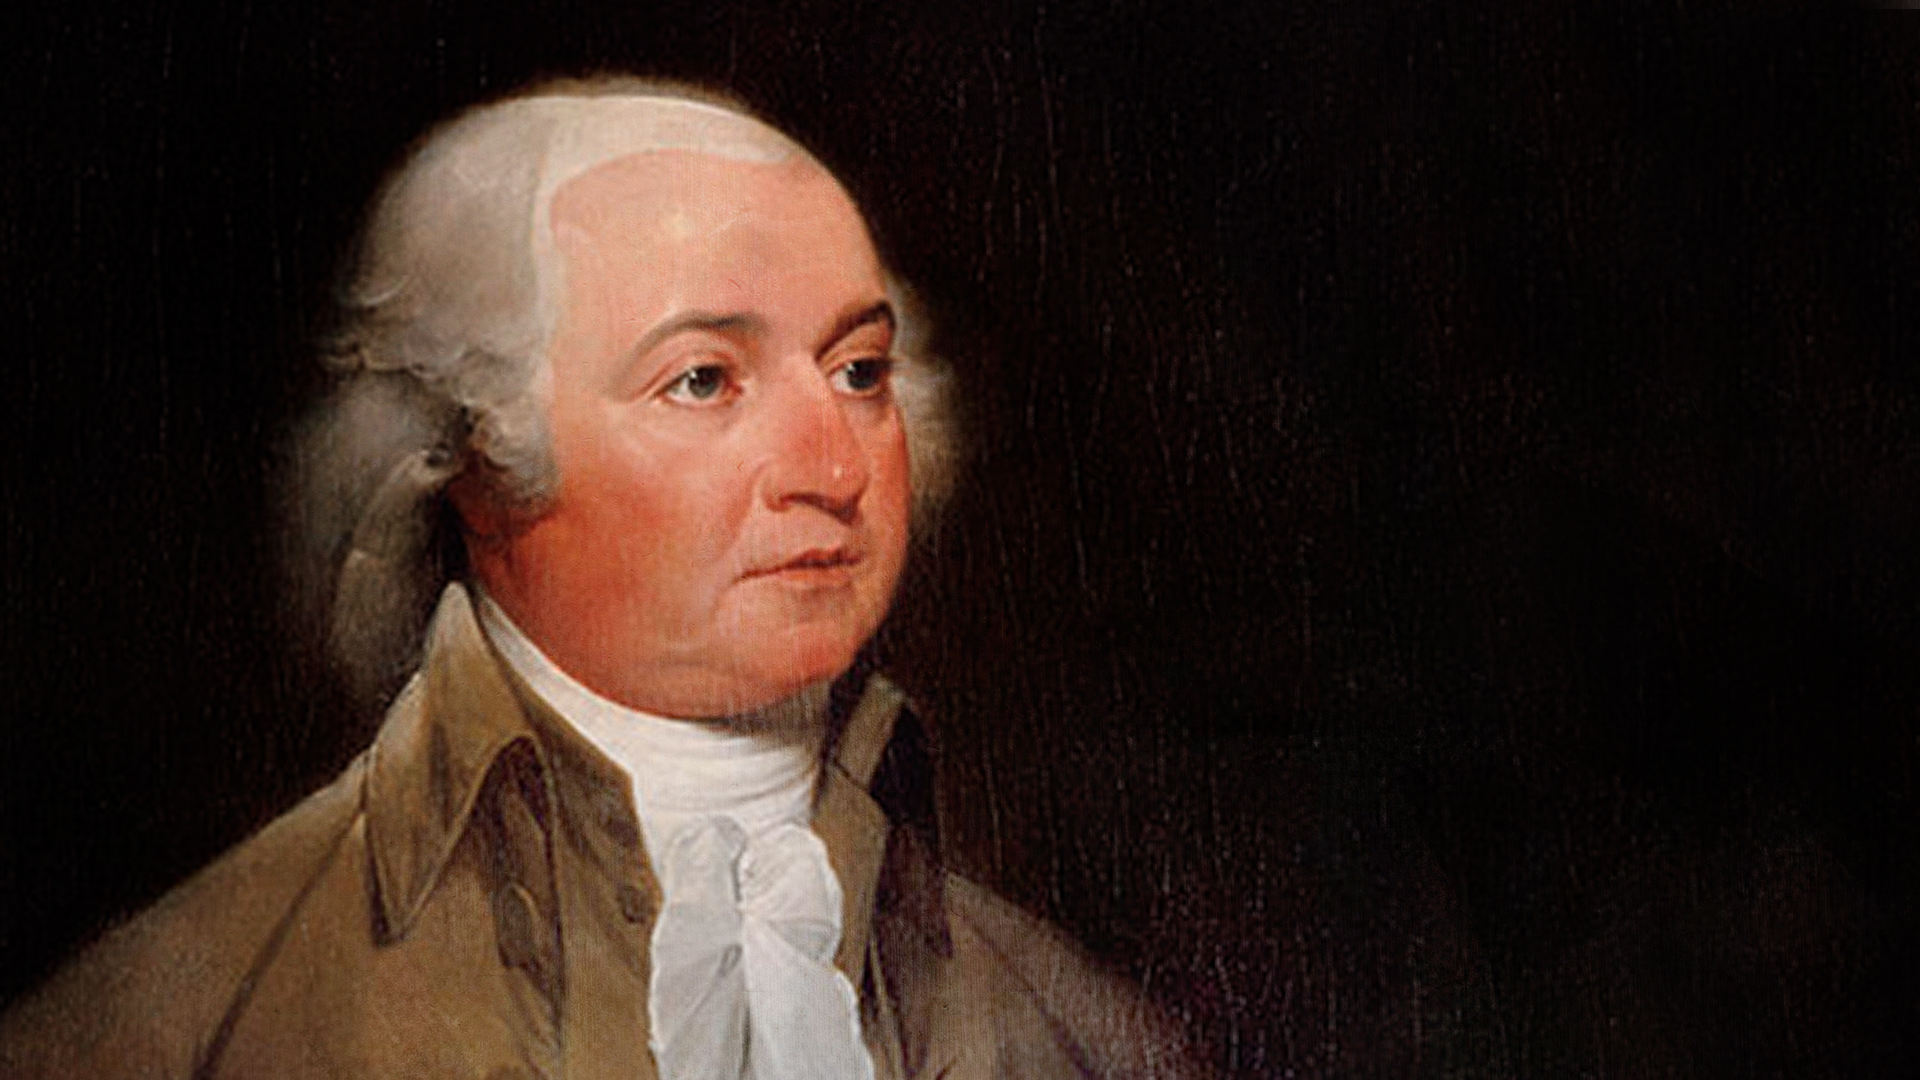 وظائف رؤساء الولايات المتحدة قبل تولي منصب الرئاسة 181916-event-1796-john-adams-elected-president